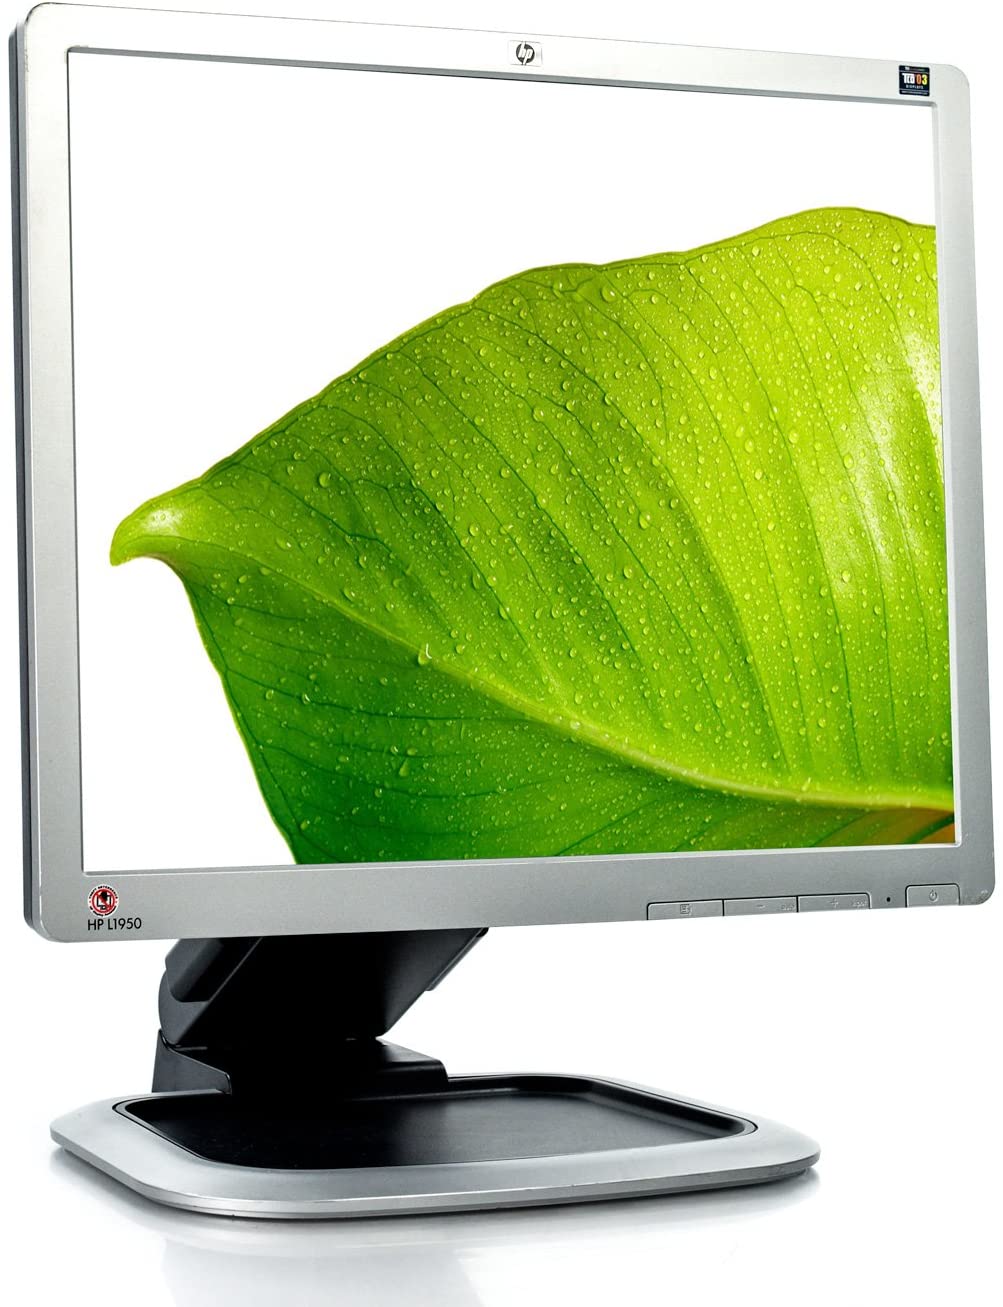 HP L1950g LCD-Monitor, 19 Zoll, 1280 x 1024 Pixel, Kontrast 800:1, Helligkeit 300 cd/m², Reaktionszeit 5 ms, VGA, USB, DVI